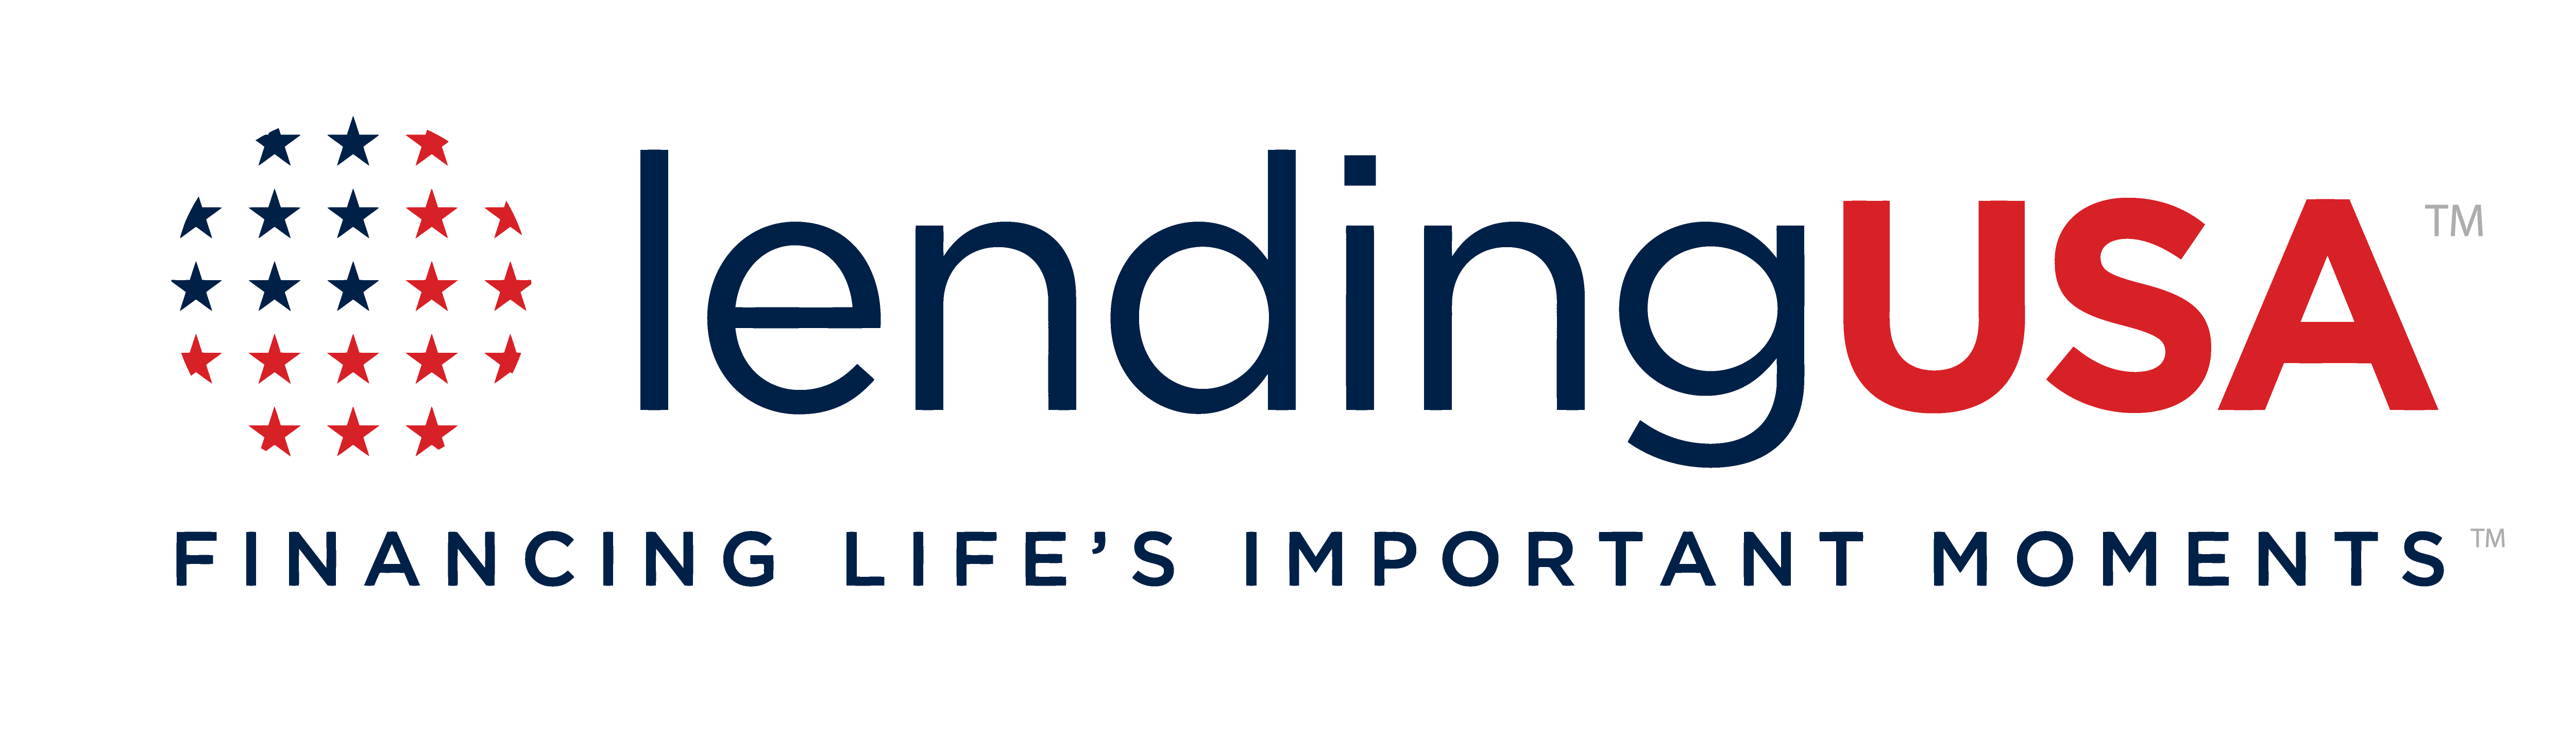 Lending Logo - LendingUSA. Financing Life's Important Moments